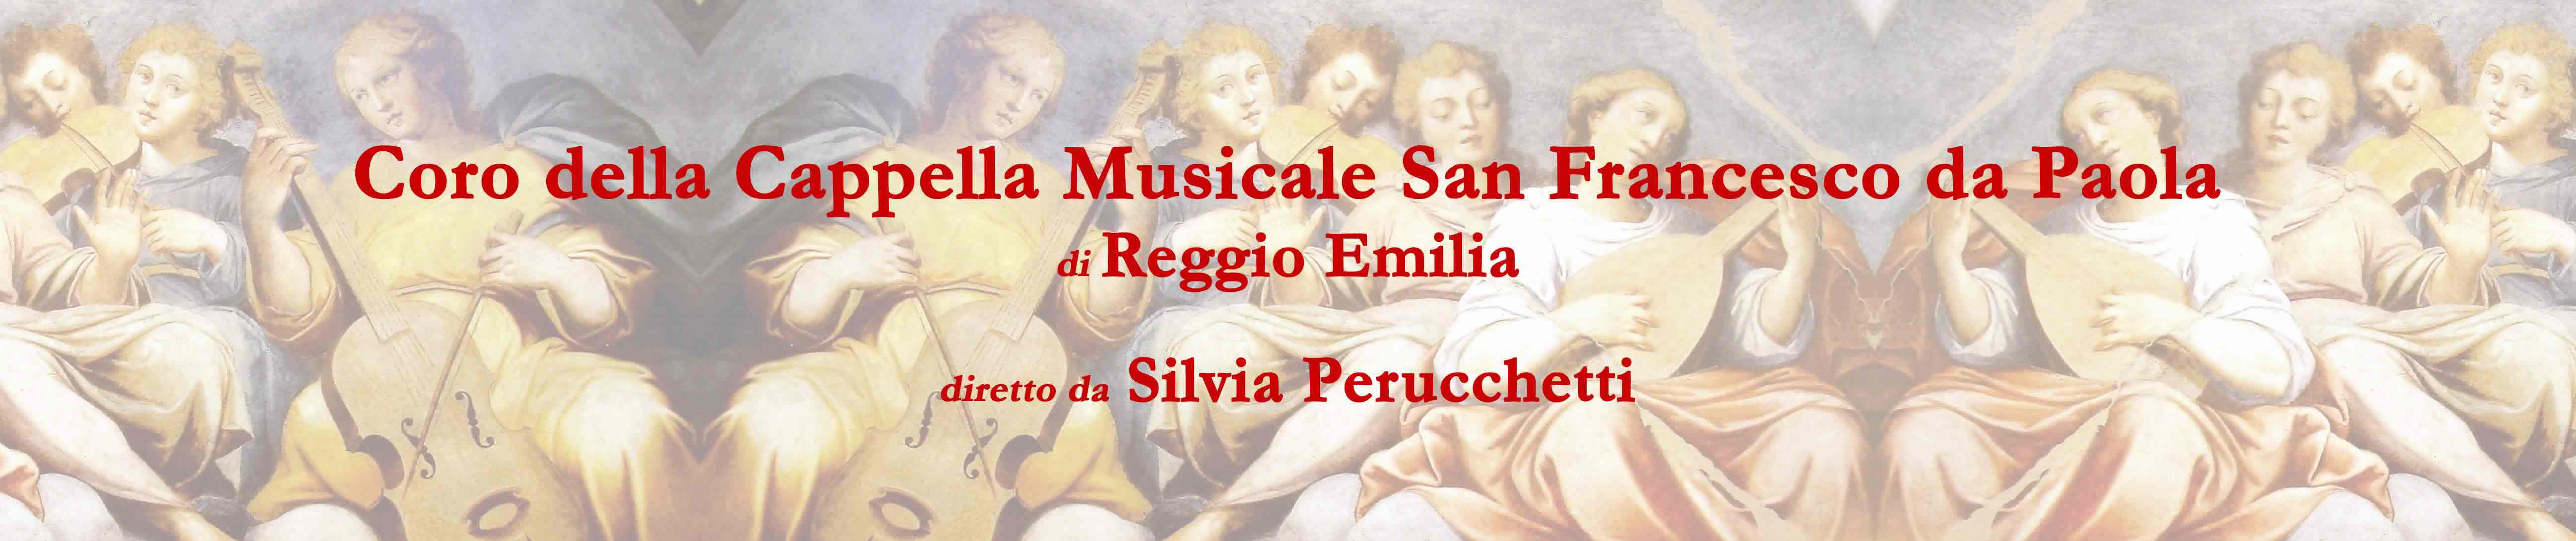 Coro della Cappella Musicale San Francesco da Paola di Reggio Emilia diretto da Silvia Perucchetti